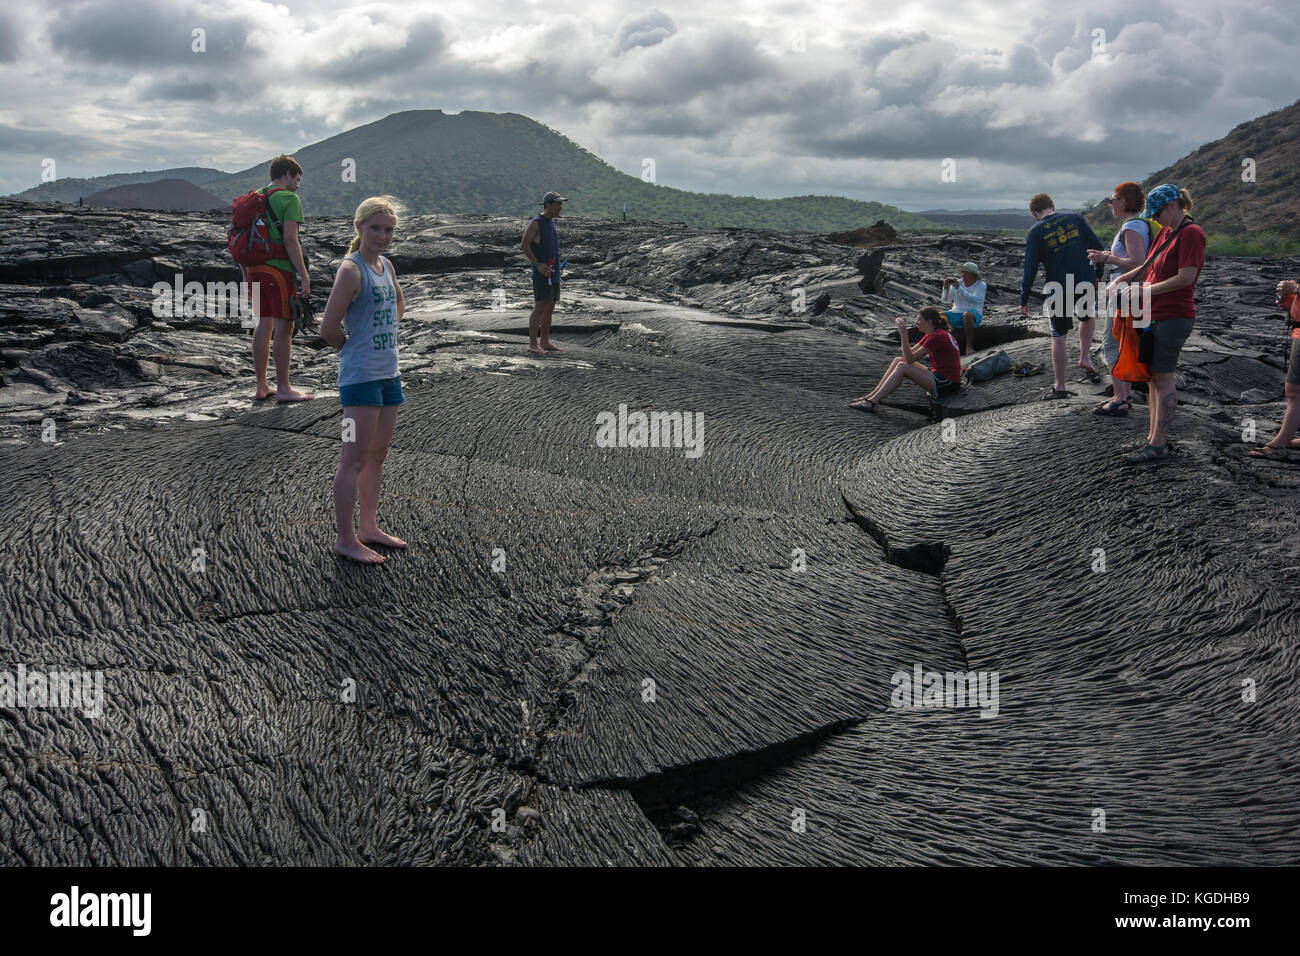 Un groupe de touristes visitent une coulée de lave récente dans les îles Galapagos. Banque D'Images